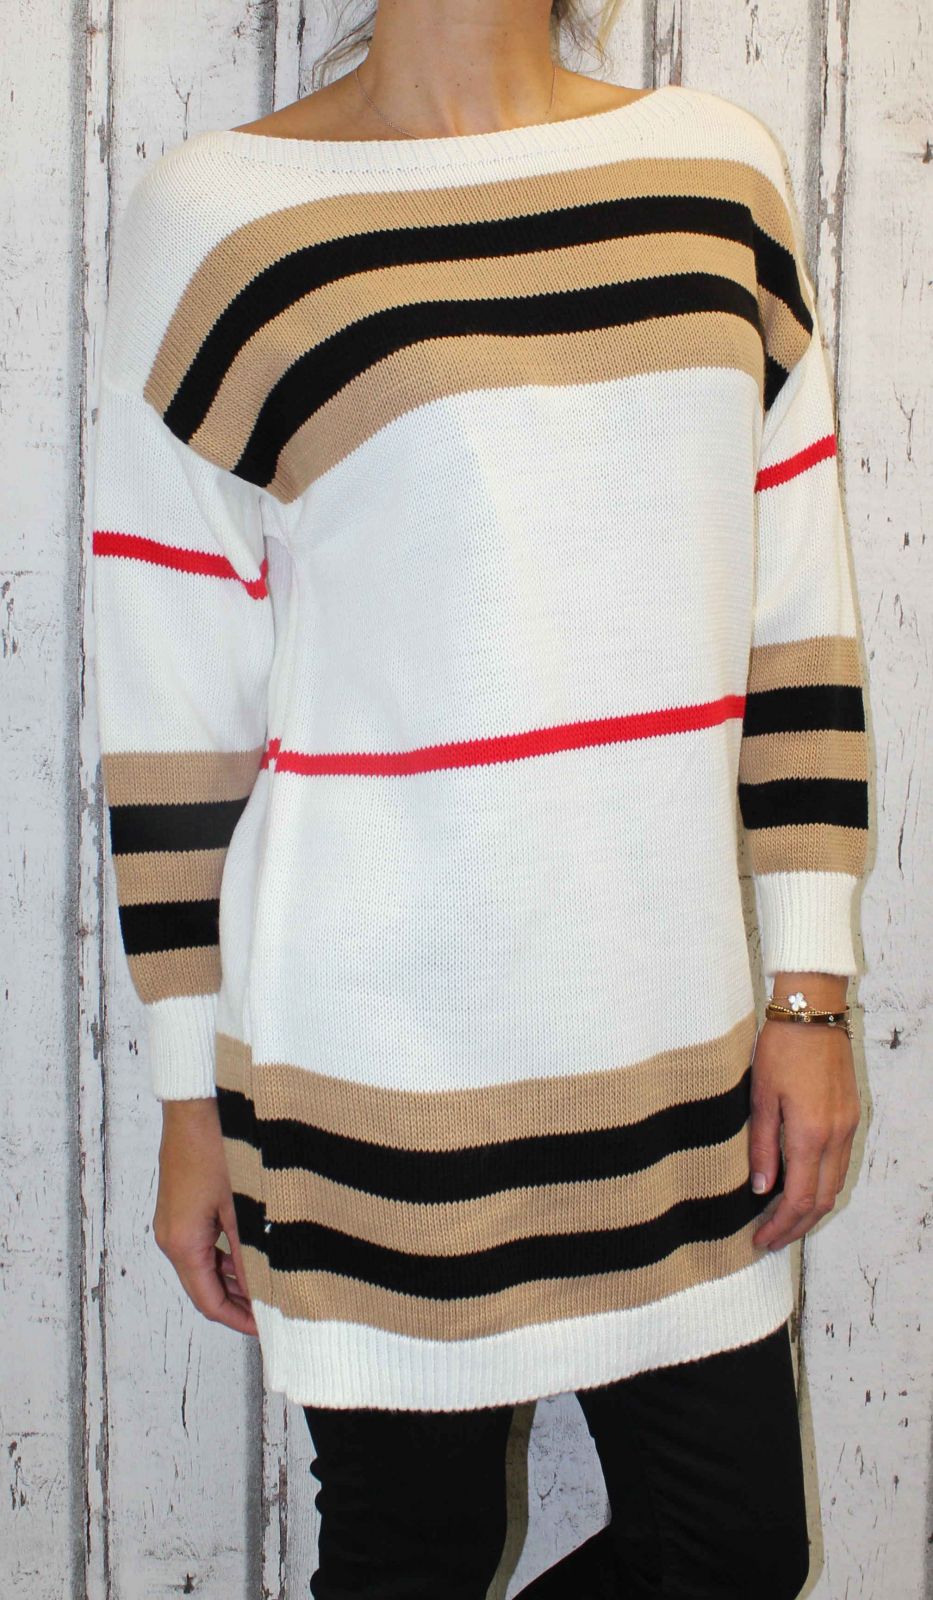 Dámský svetr, dámský dlouhý svetr, dlouhý bílo-hnědý svetr, teplý svetr, volný svetr, svetr s rantlem, pruhovaný svetr Italy Moda